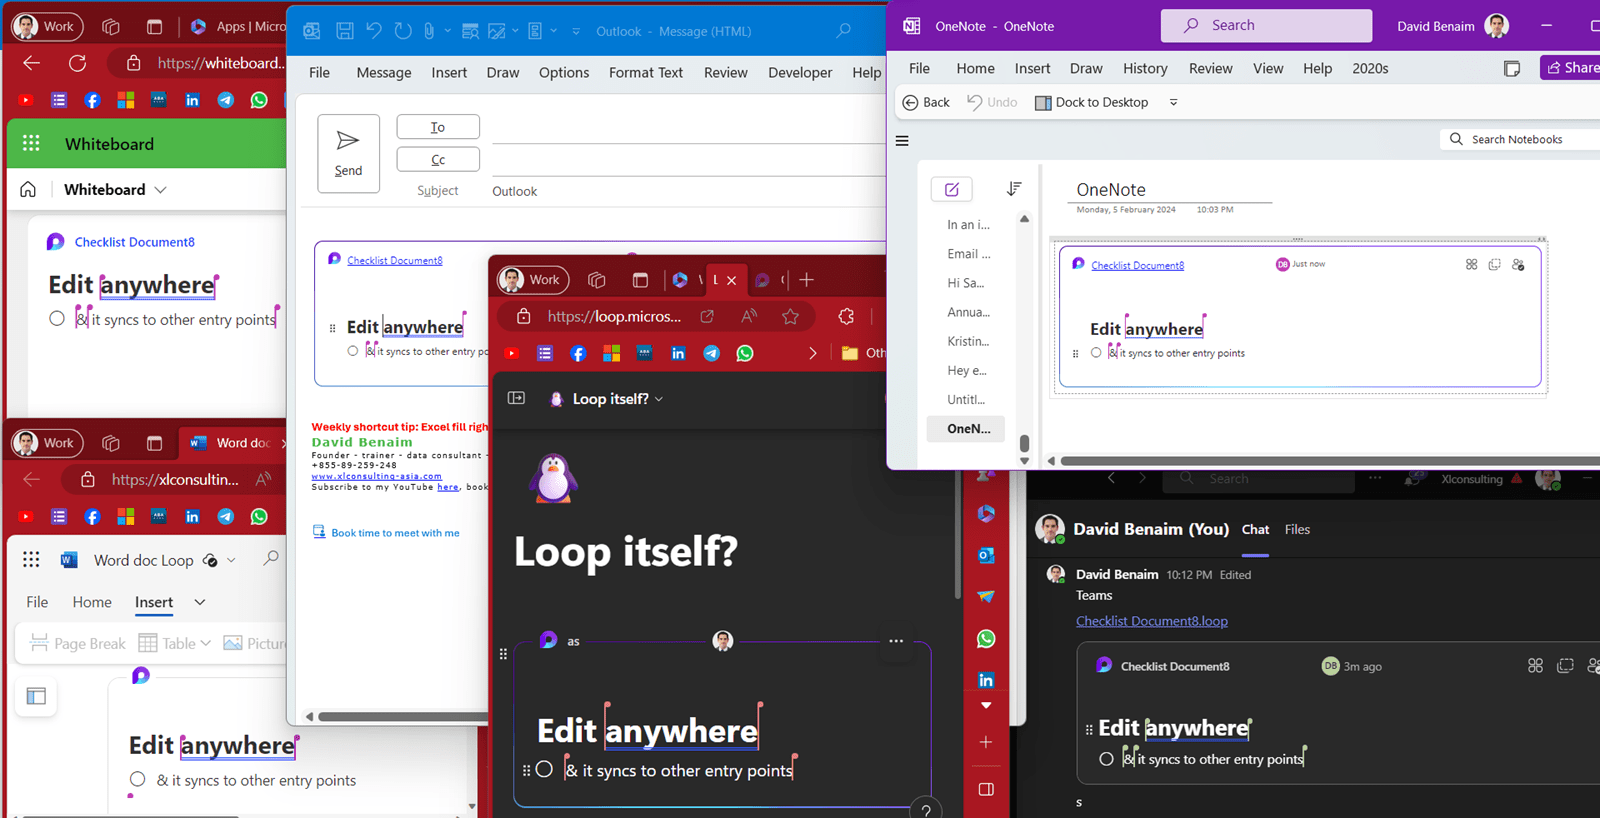 screenshot of Microsoft Loop